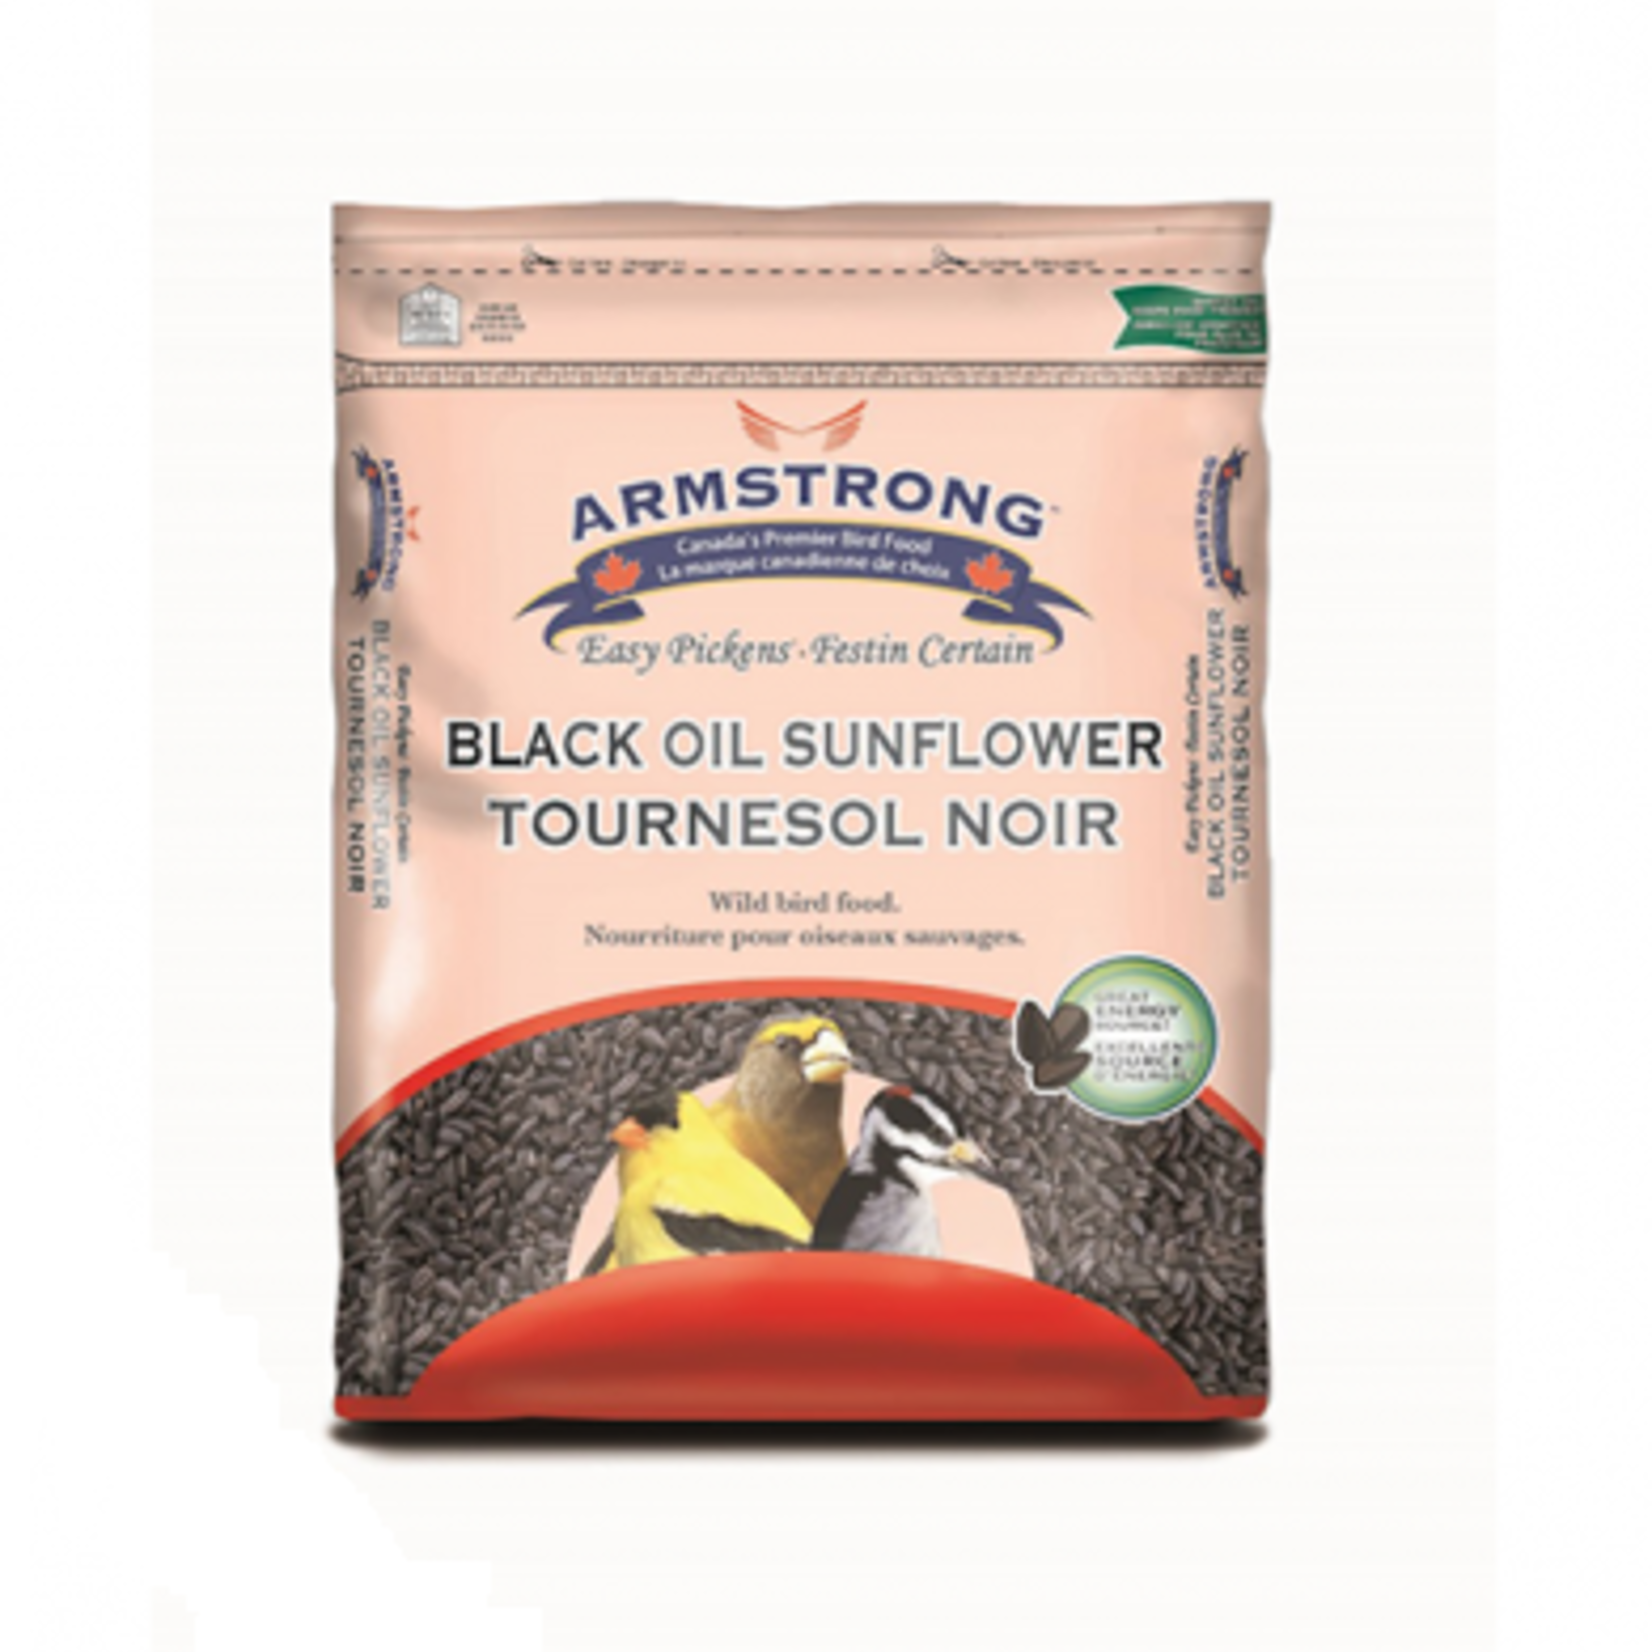 Armstrong Huile de Tournesol Noir - 1,8 kg